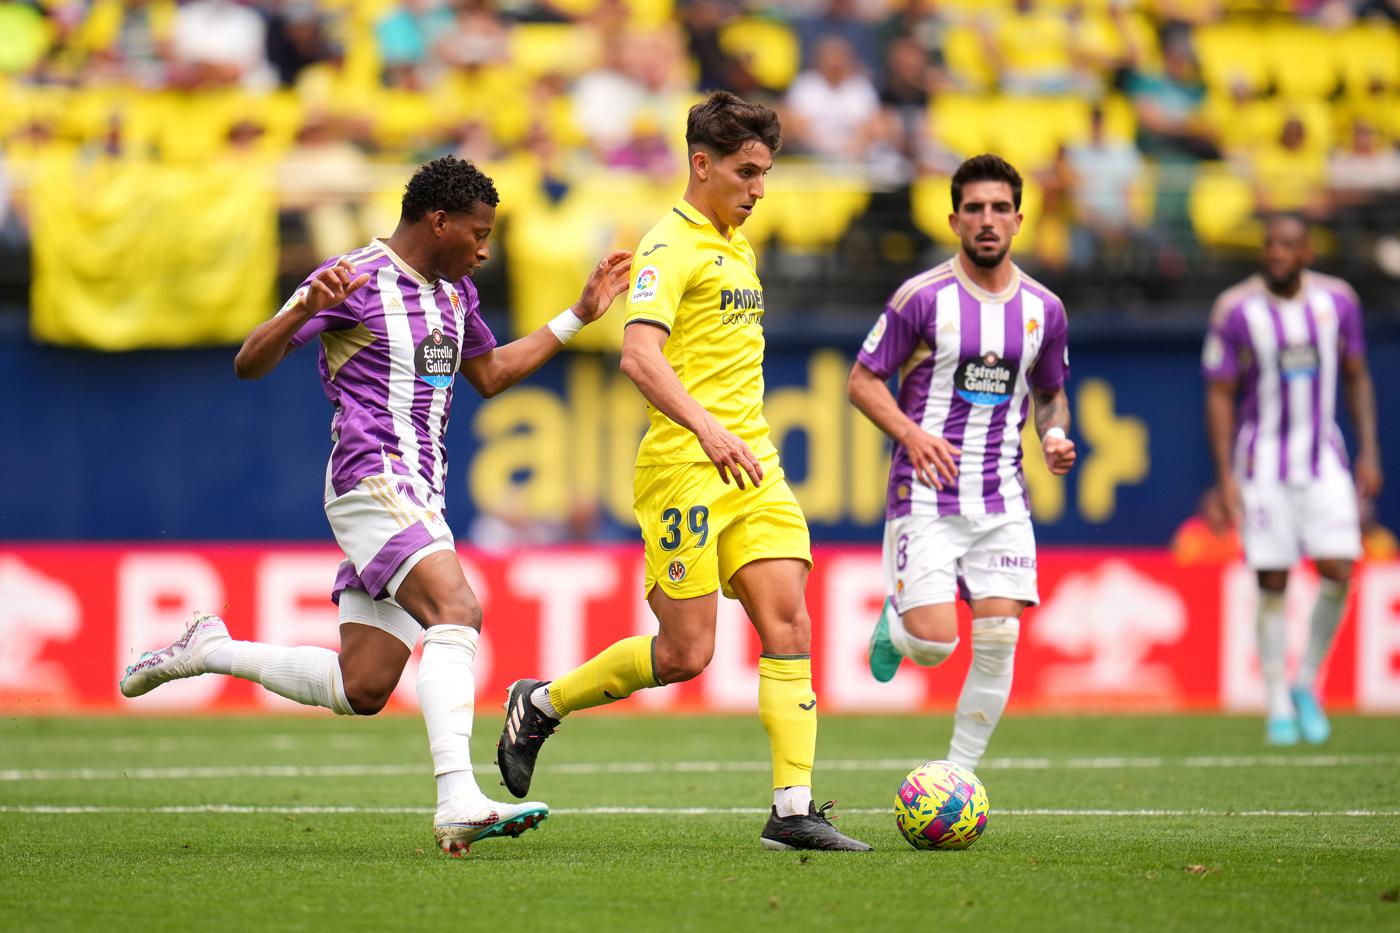 Villarreal - Valladolid - 1:2. Spanische Meisterschaft, 29. Runde. Spielbericht, Statistiken